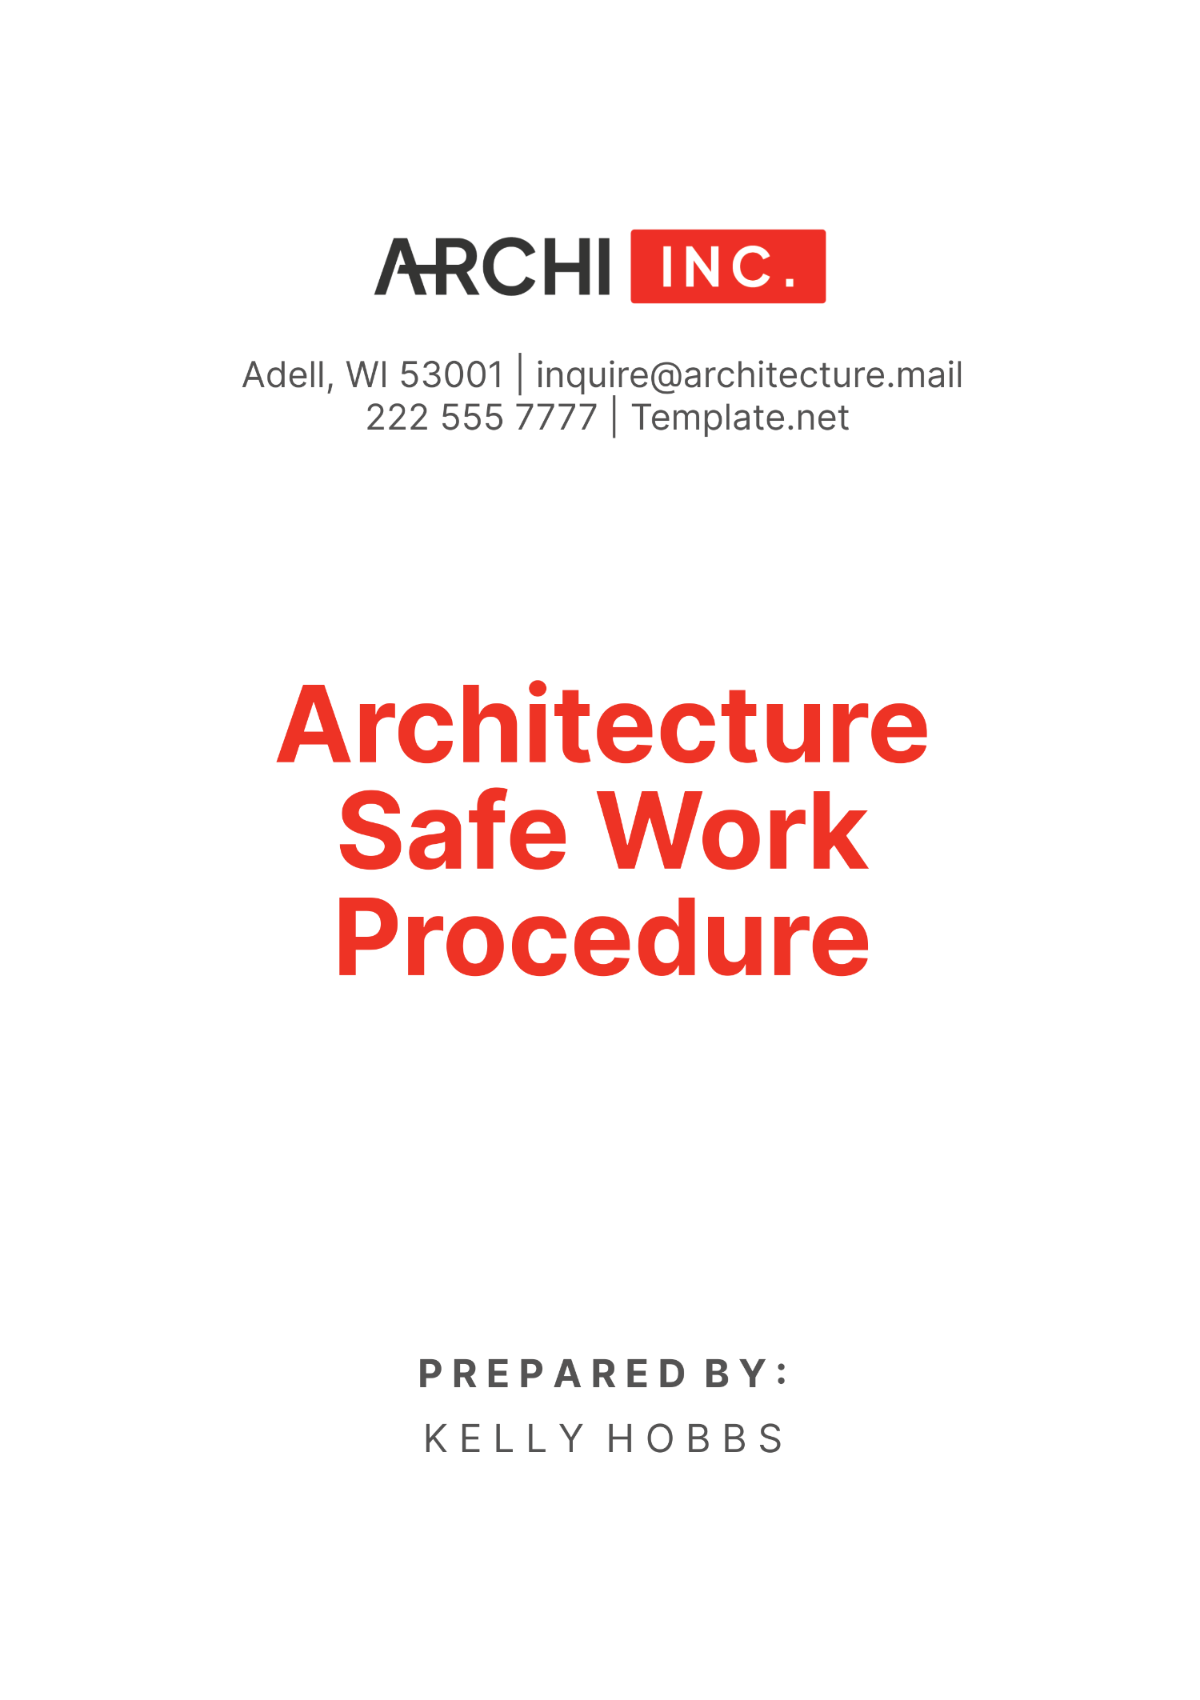 Architecture Safe Work Procedure Template